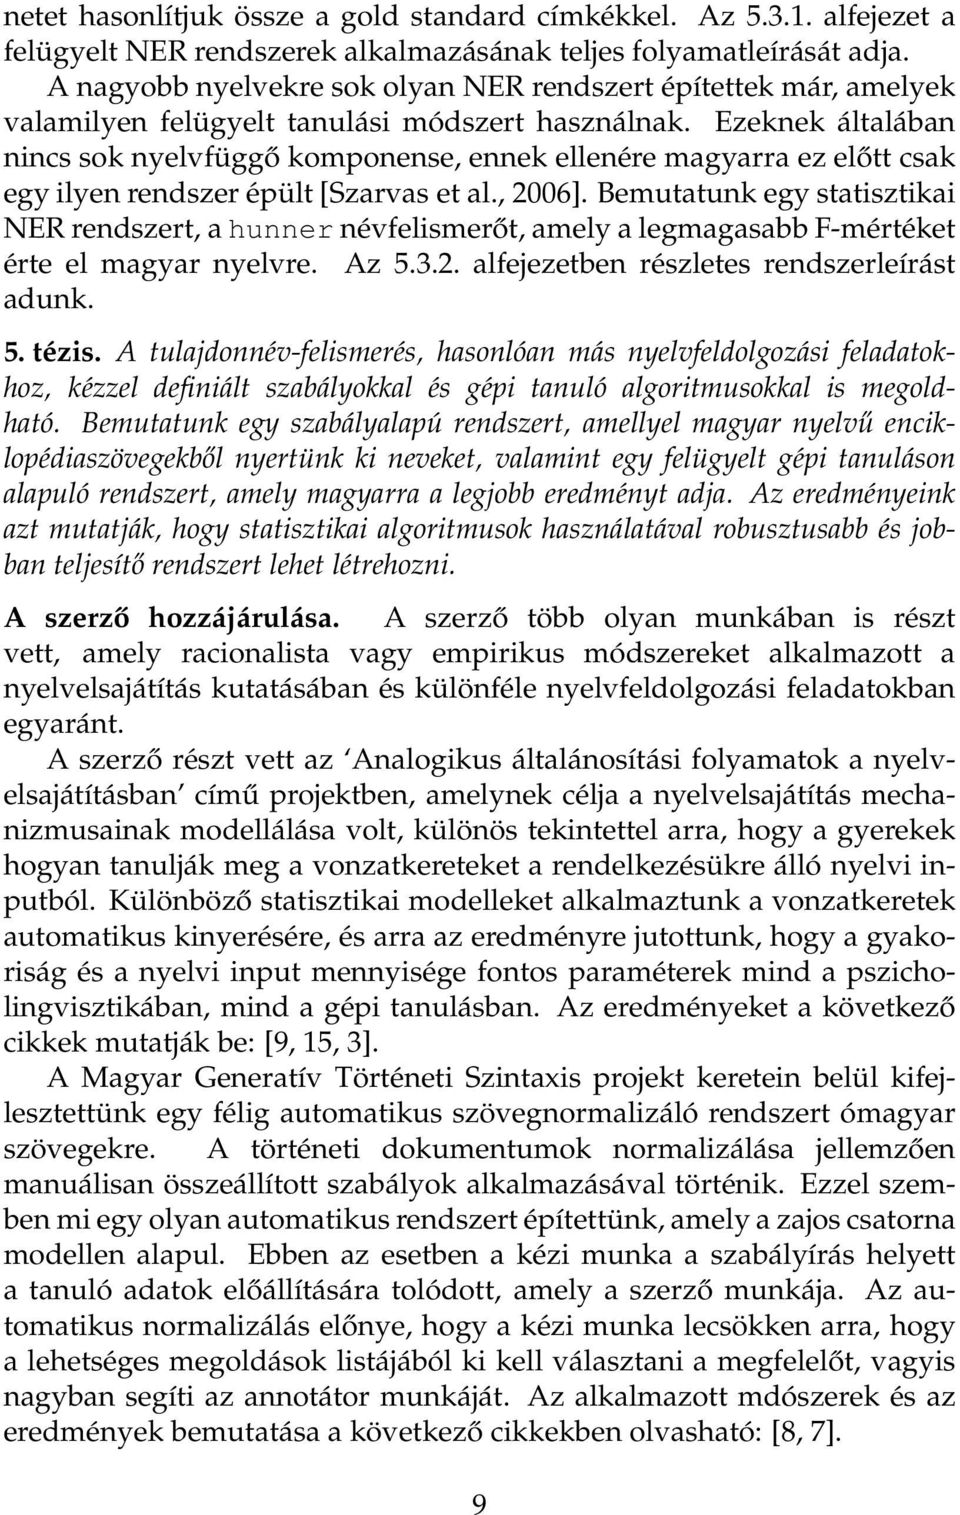 Ezeknek általában nincs sok nyelvfüggő komponense, ennek ellenére magyarra ez előtt csak egy ilyen rendszer épült [Szarvas et al., 2006].